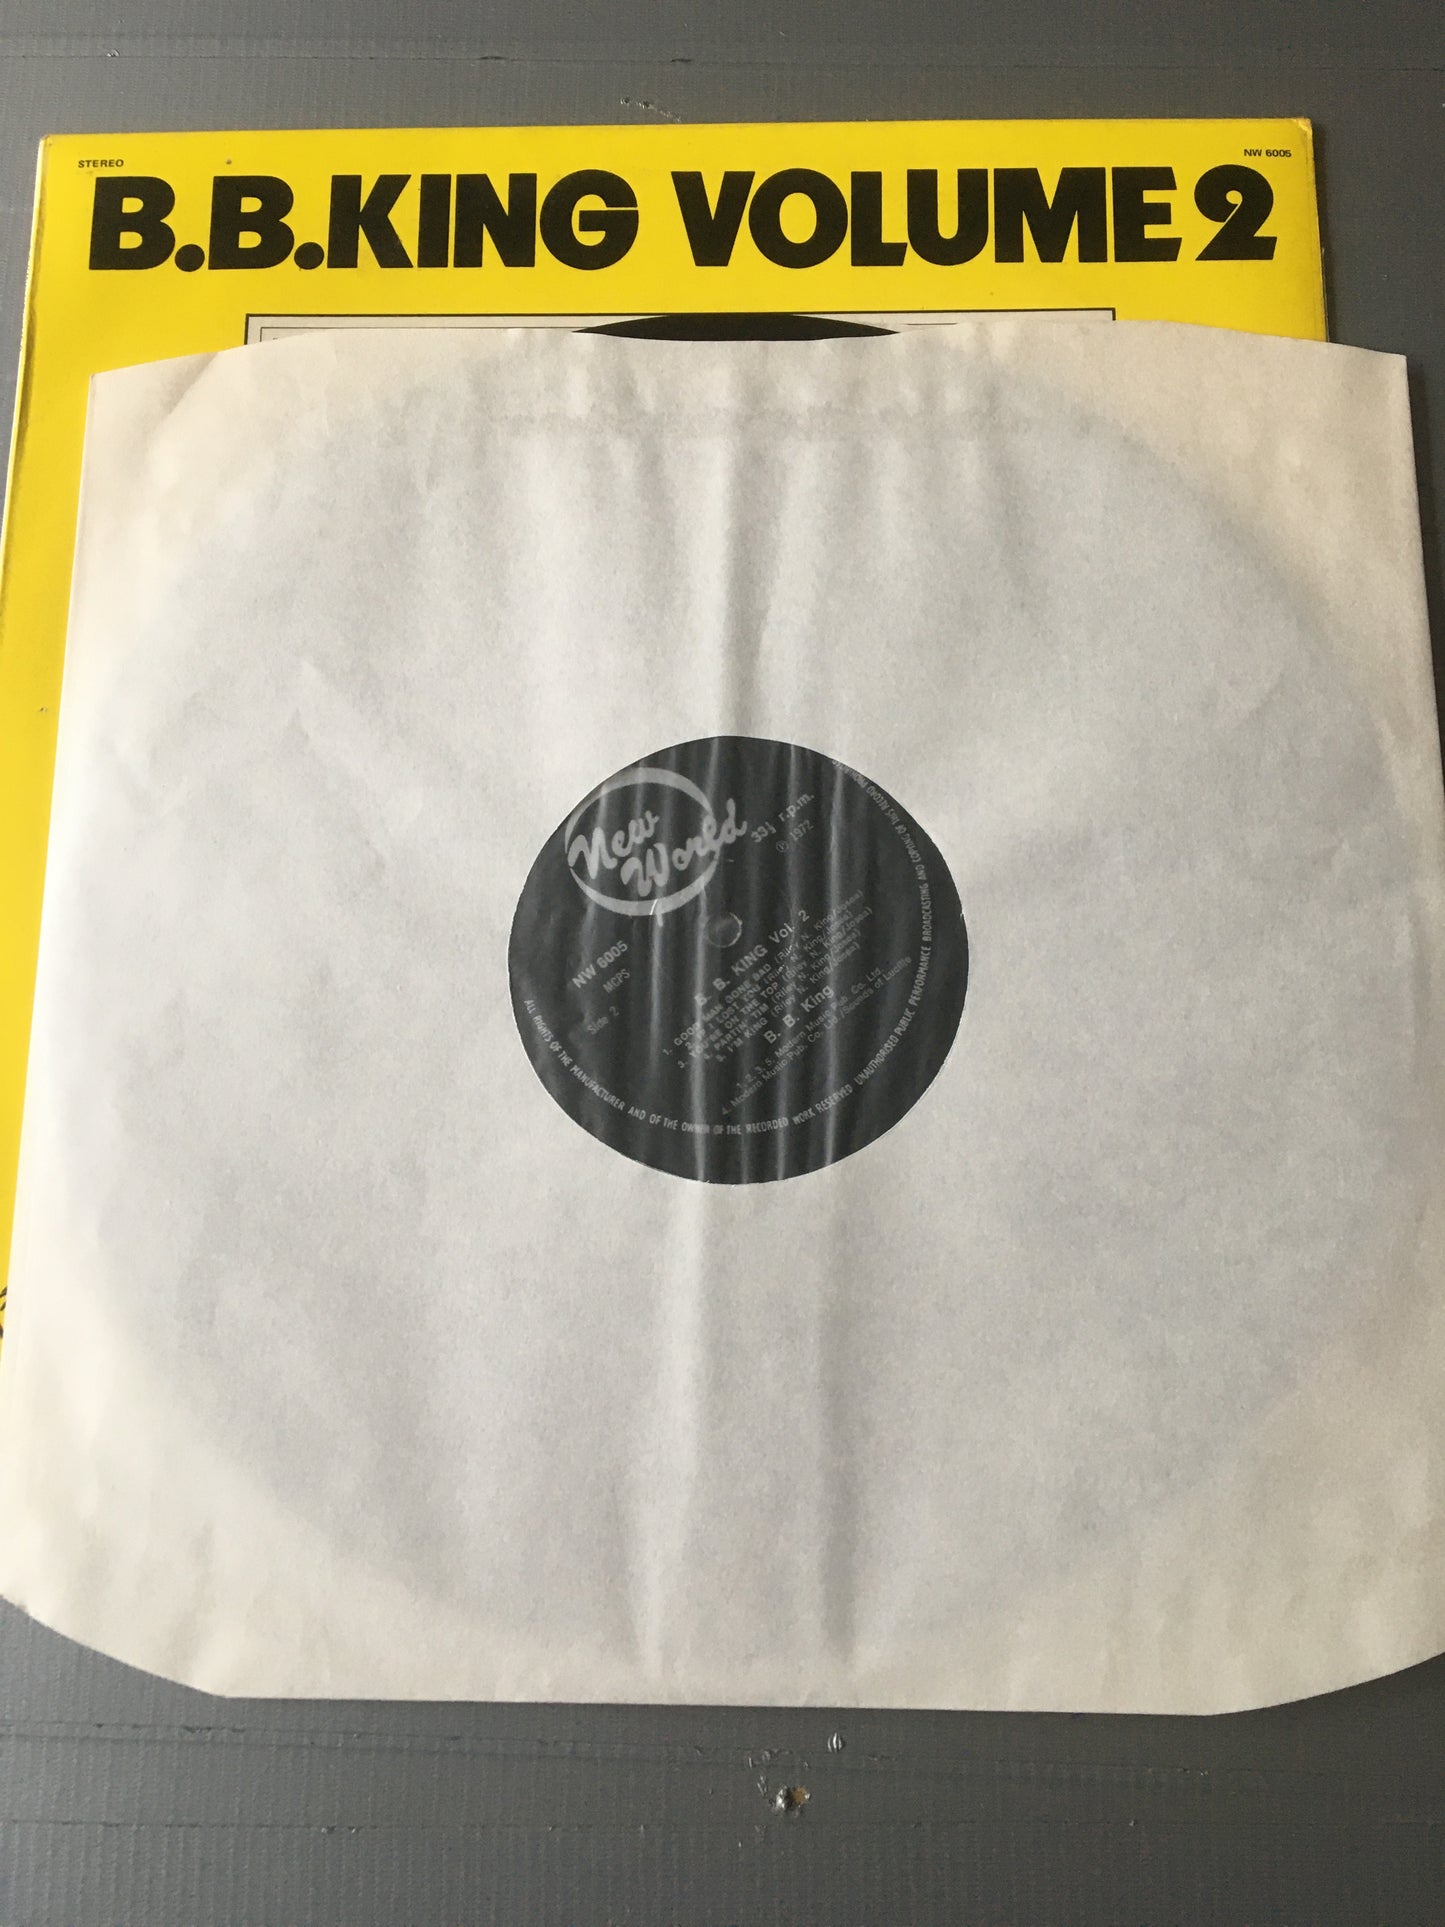 B.B. King LP VOLUME 2